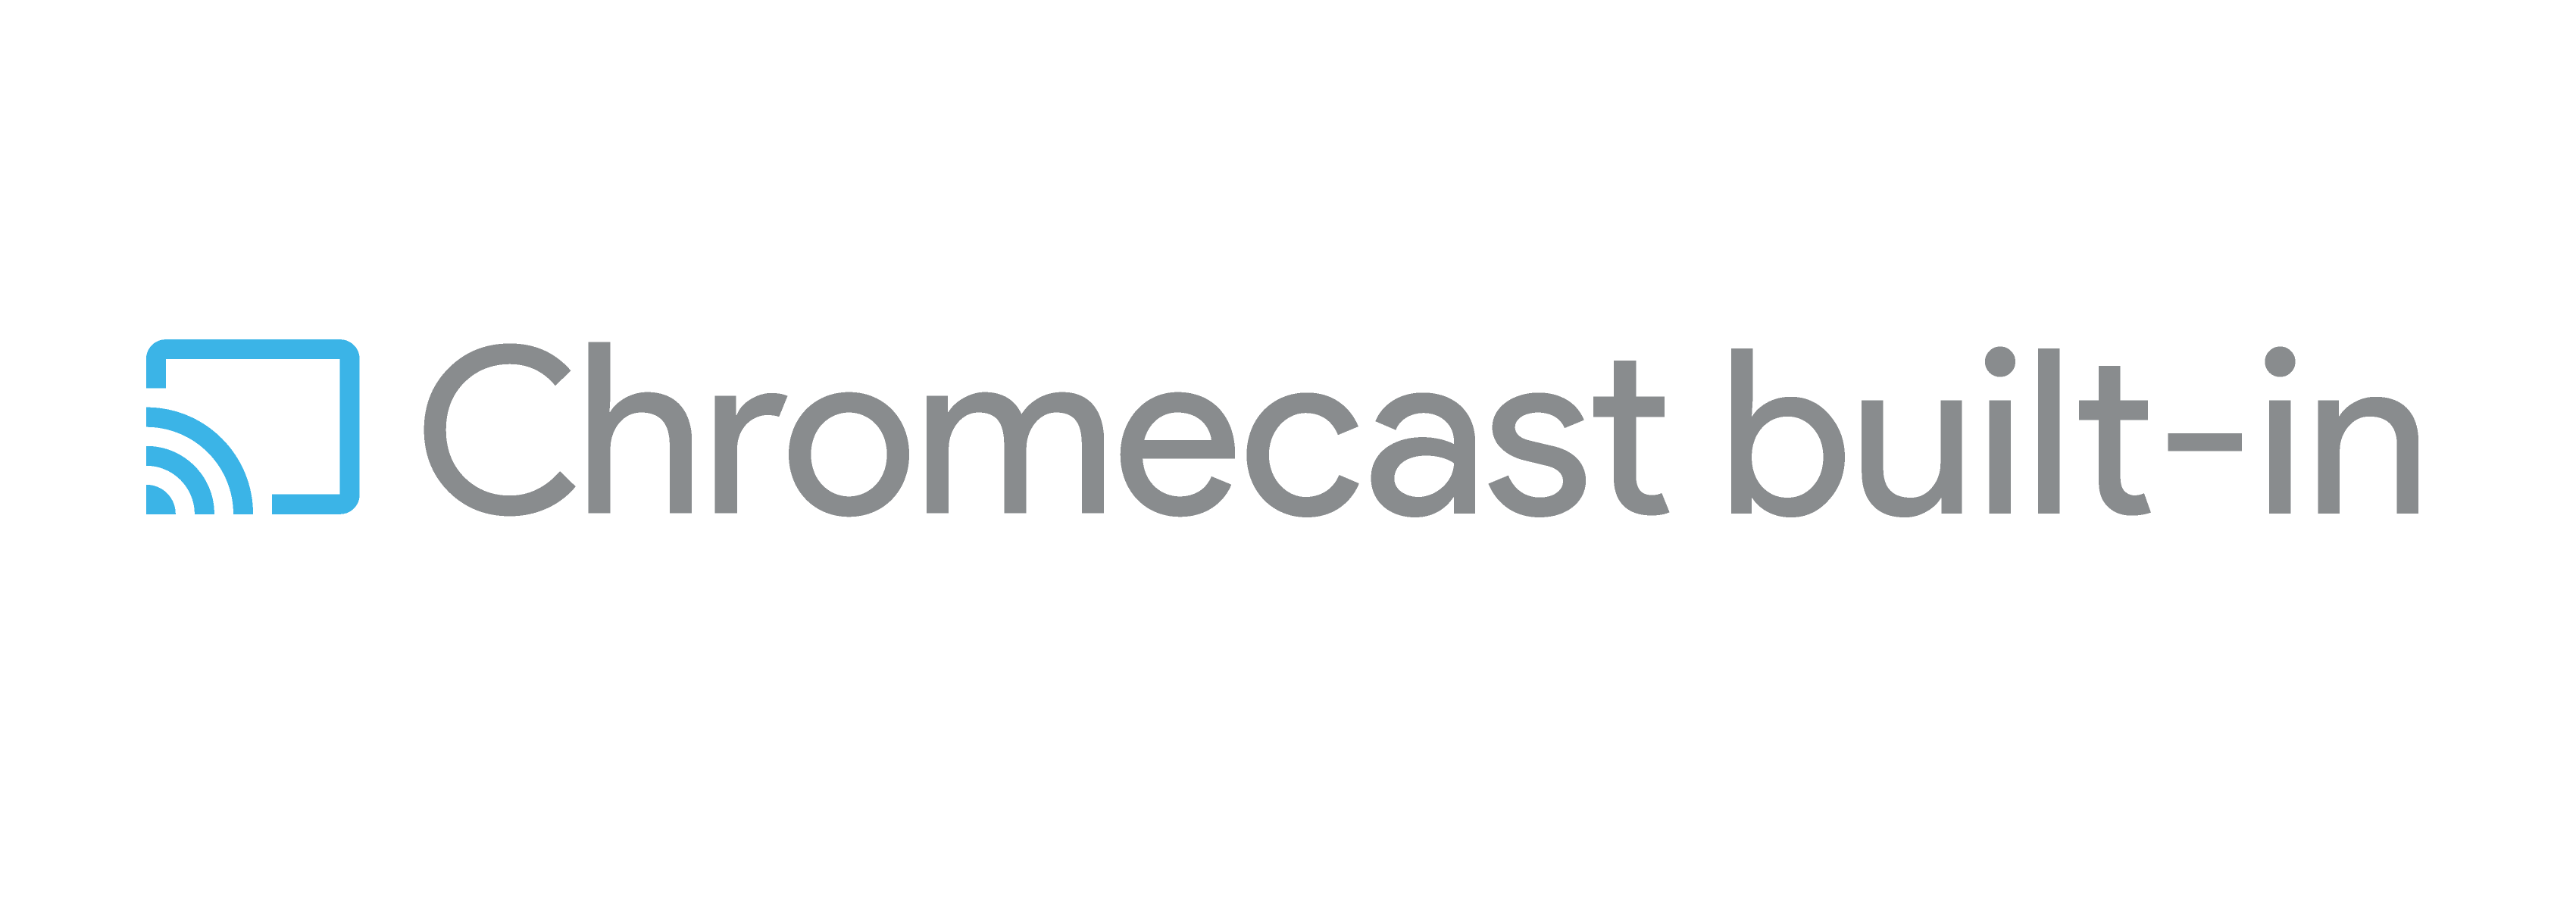 Google Chromecast Logo - User Experience with the Chromecast Platform